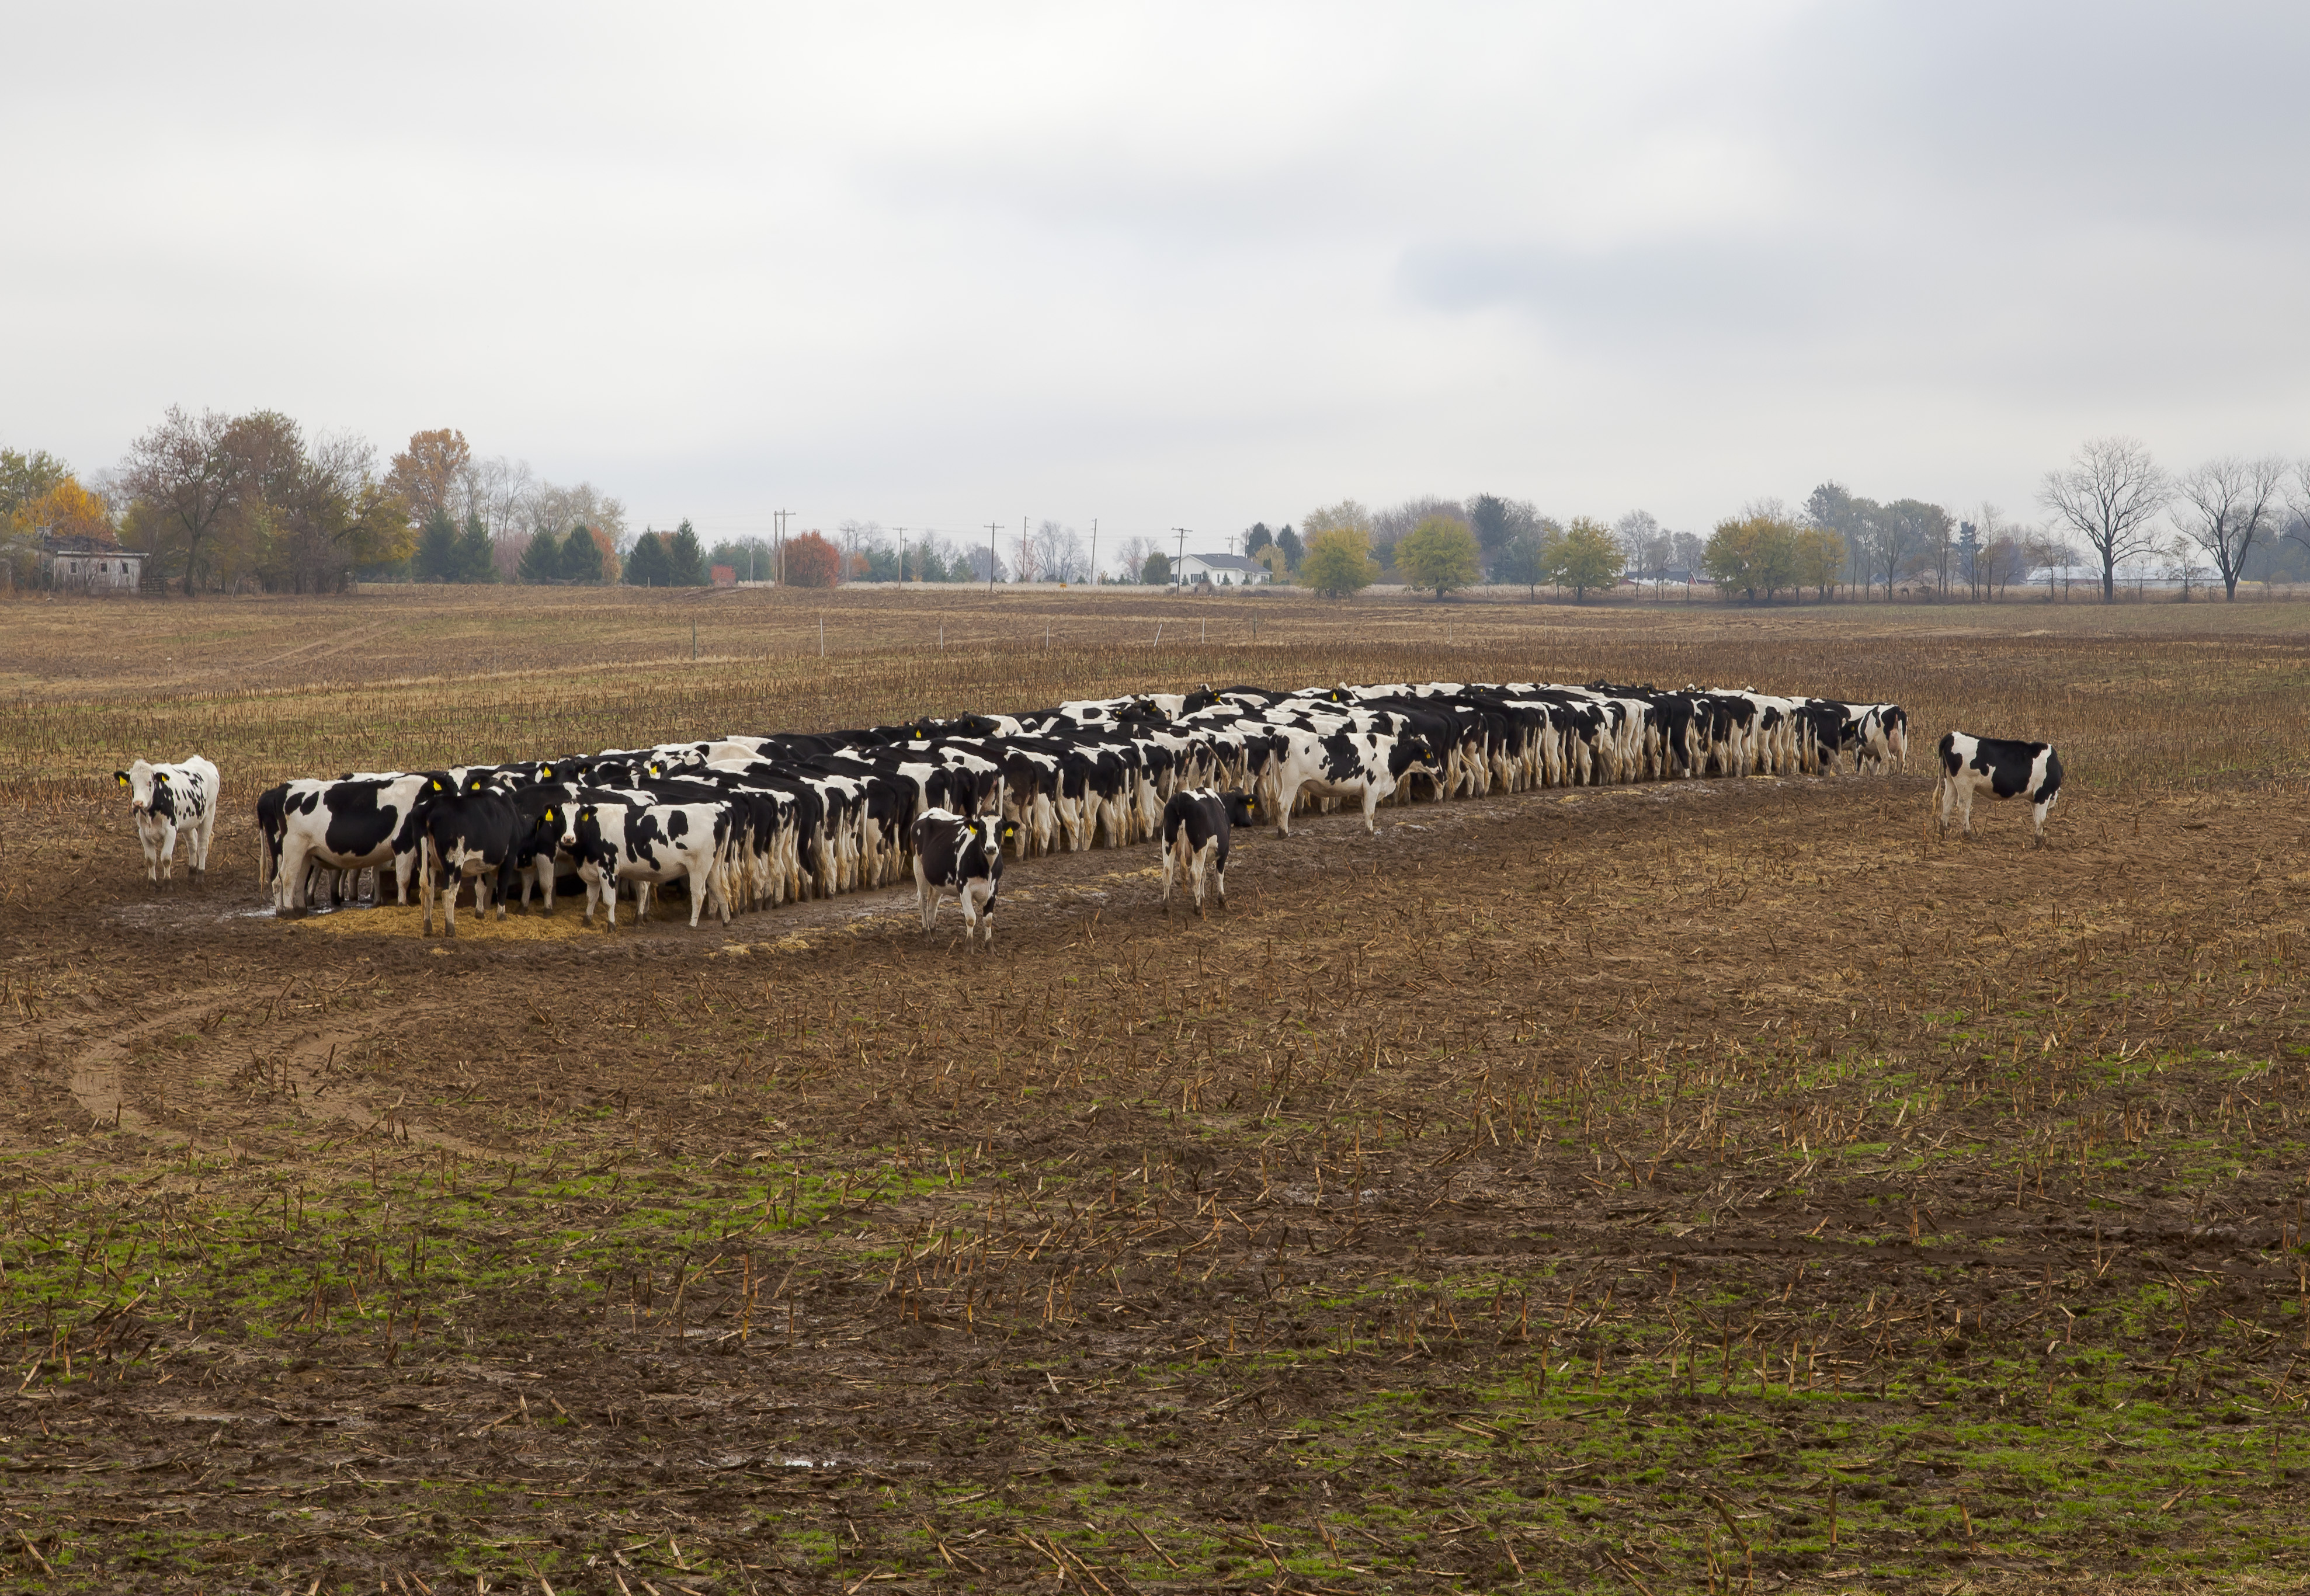 Vacas comiendo pienso, Kokomo, Indiana, Estados Unidos, 2012-10-20, DD 04